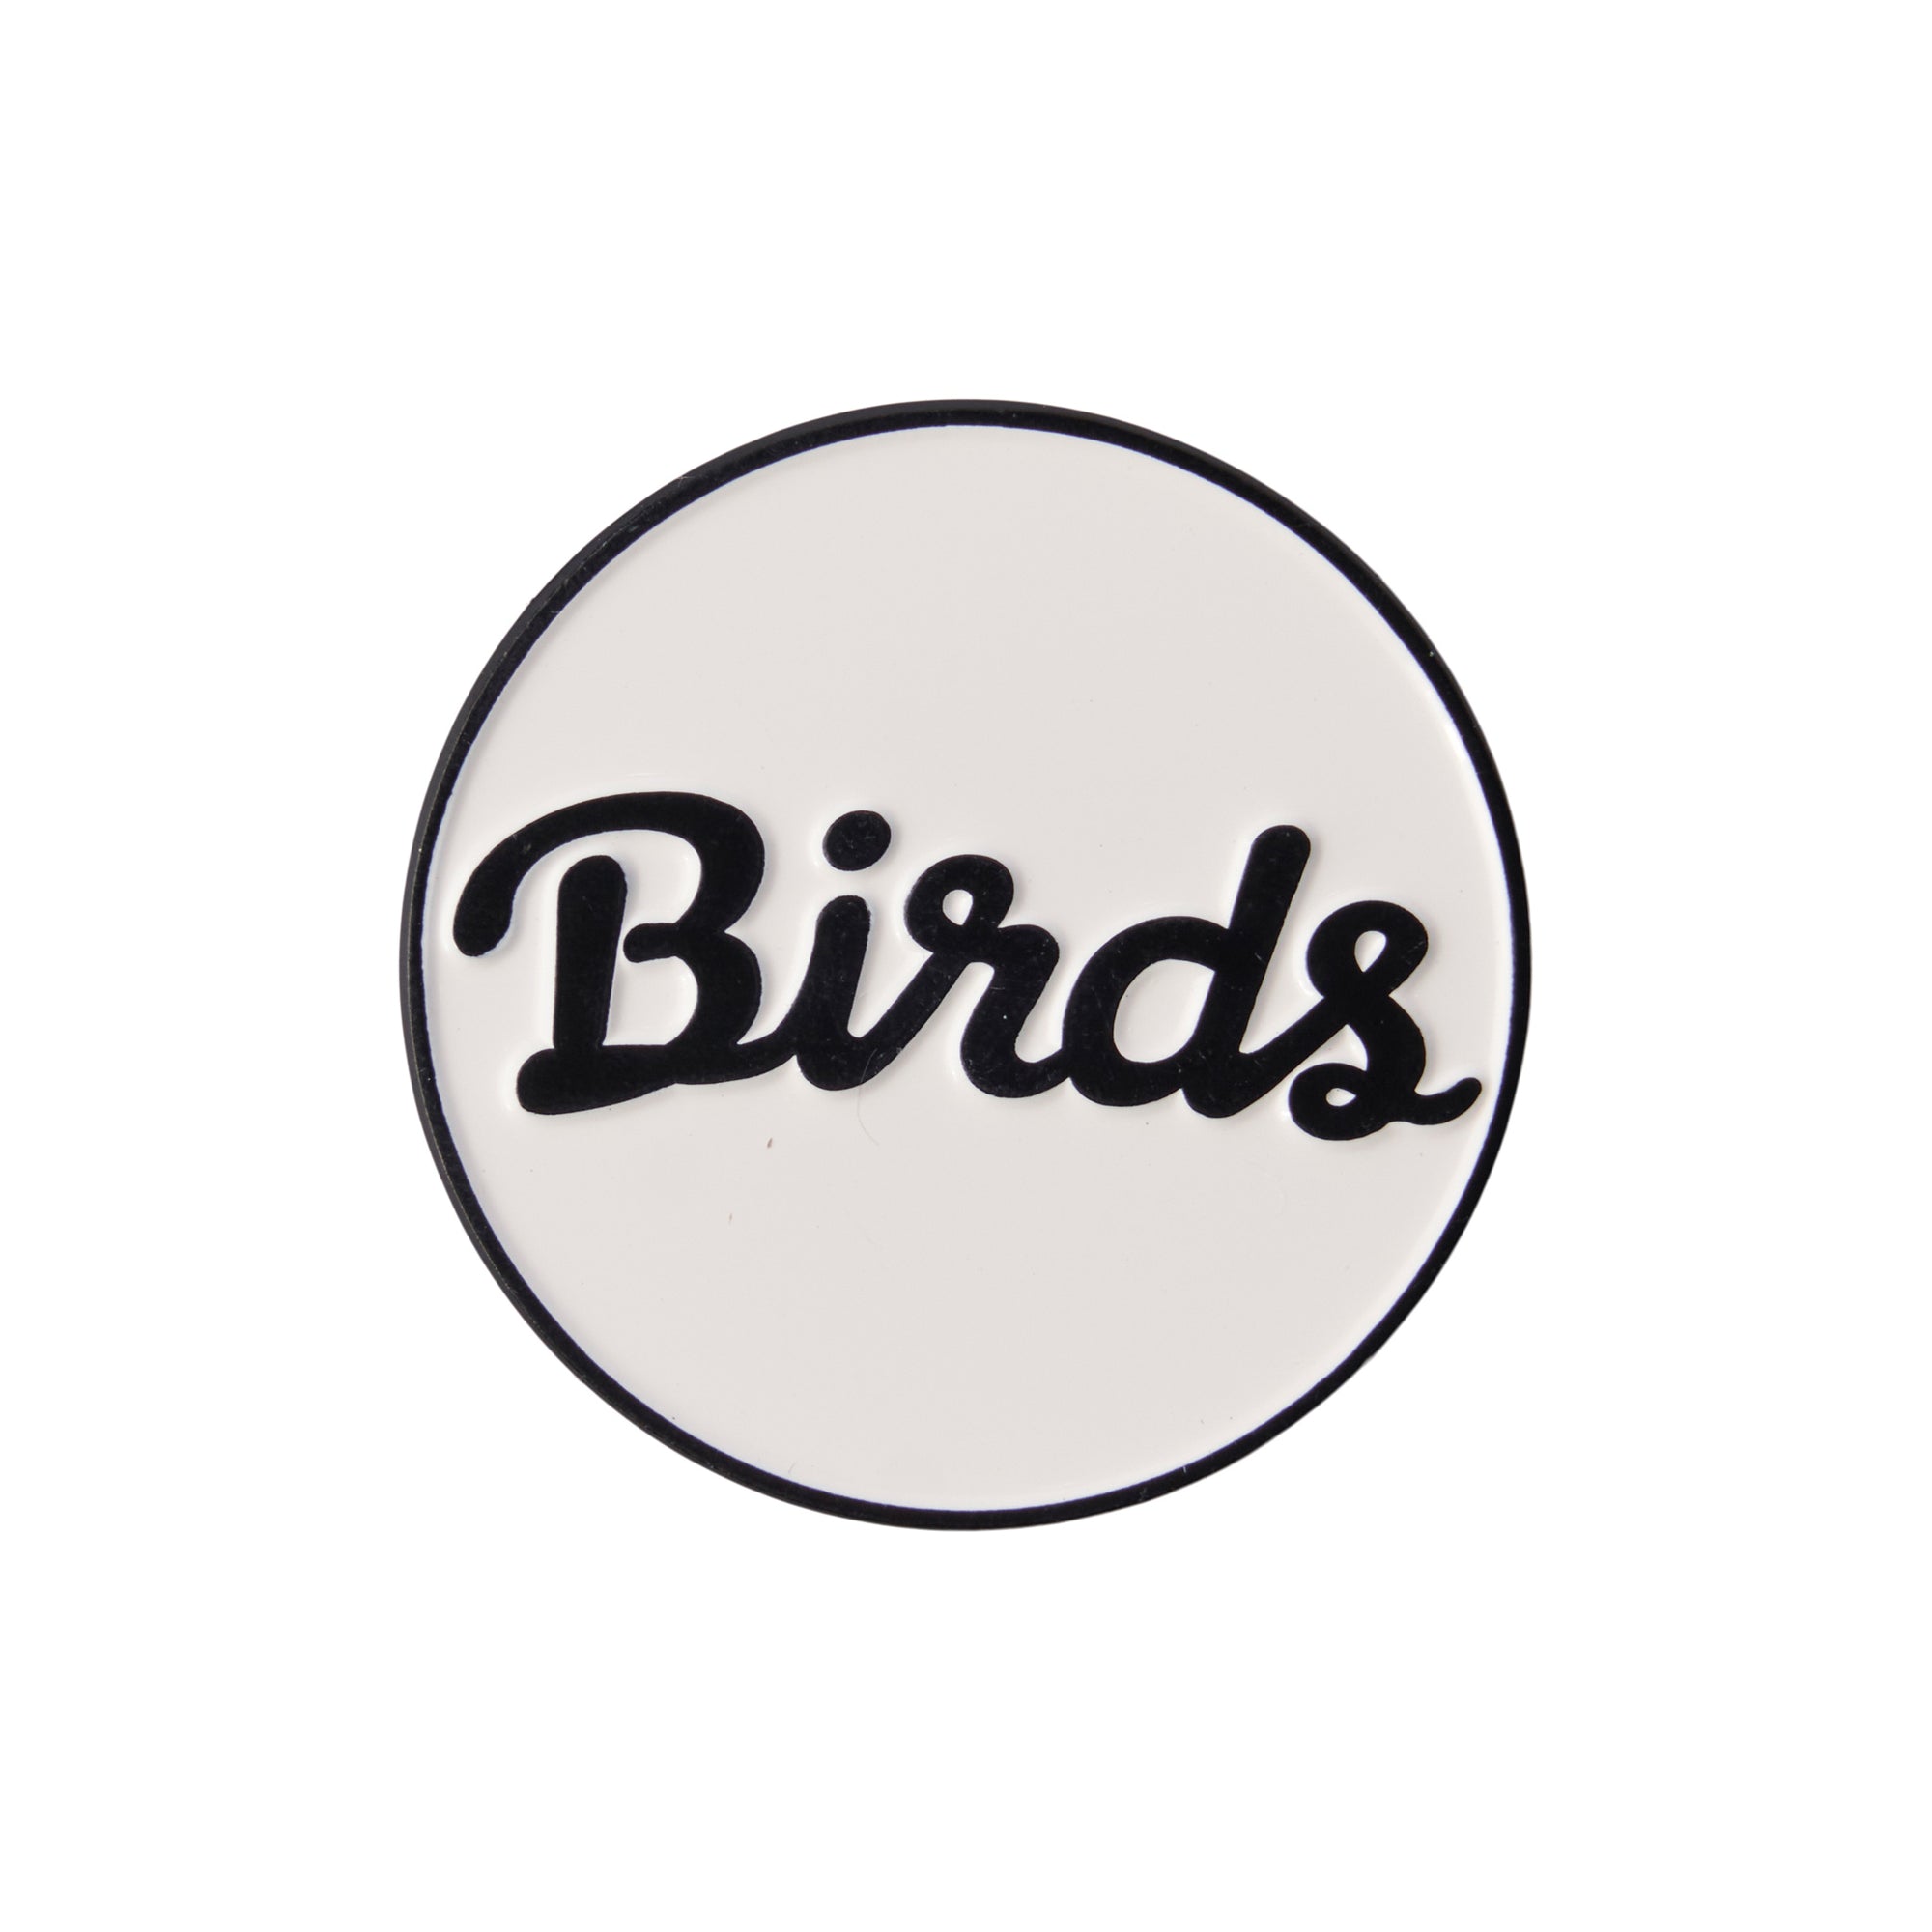    birds-of-condor-black-white-golf-course-ball-mark-marker-front